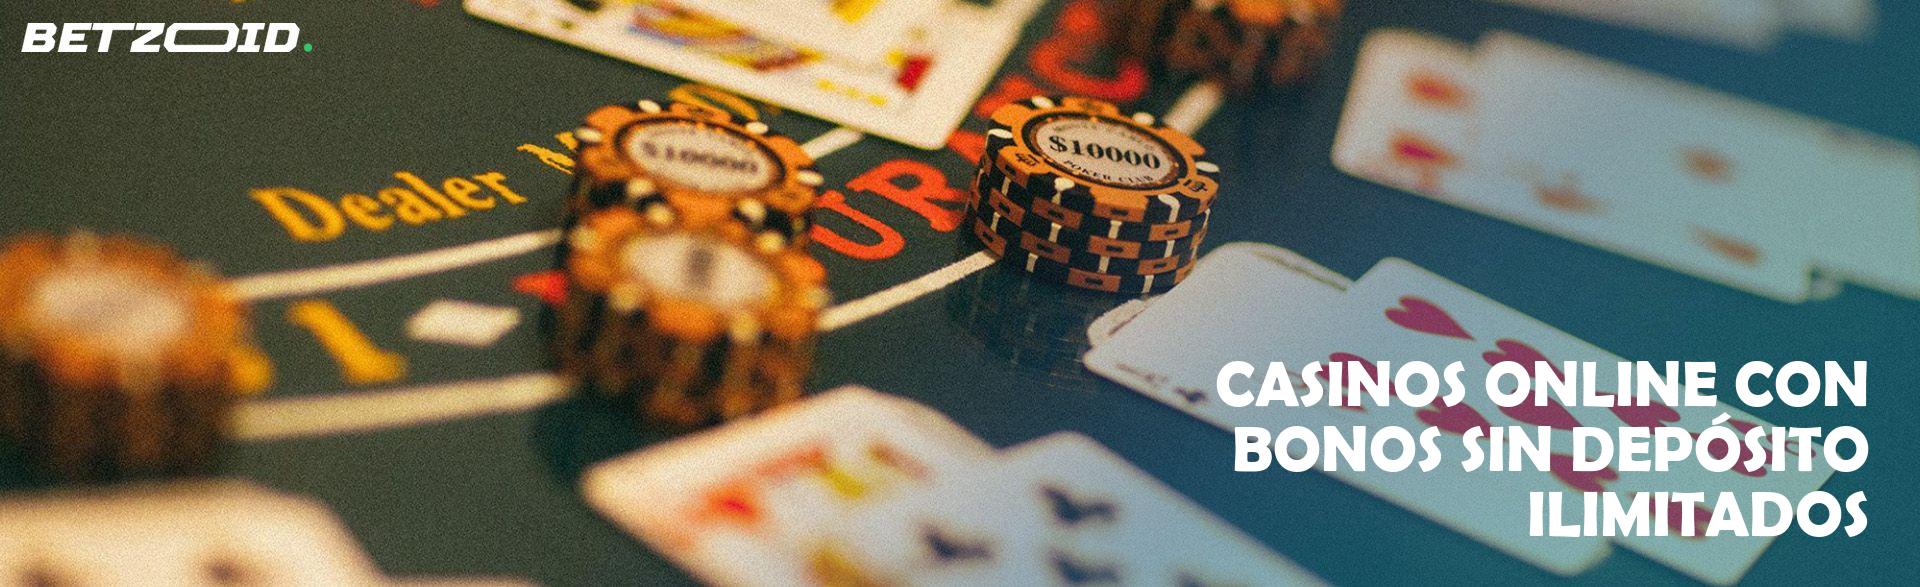 Casinos Online con Bonos sin Depósito Ilimitados.